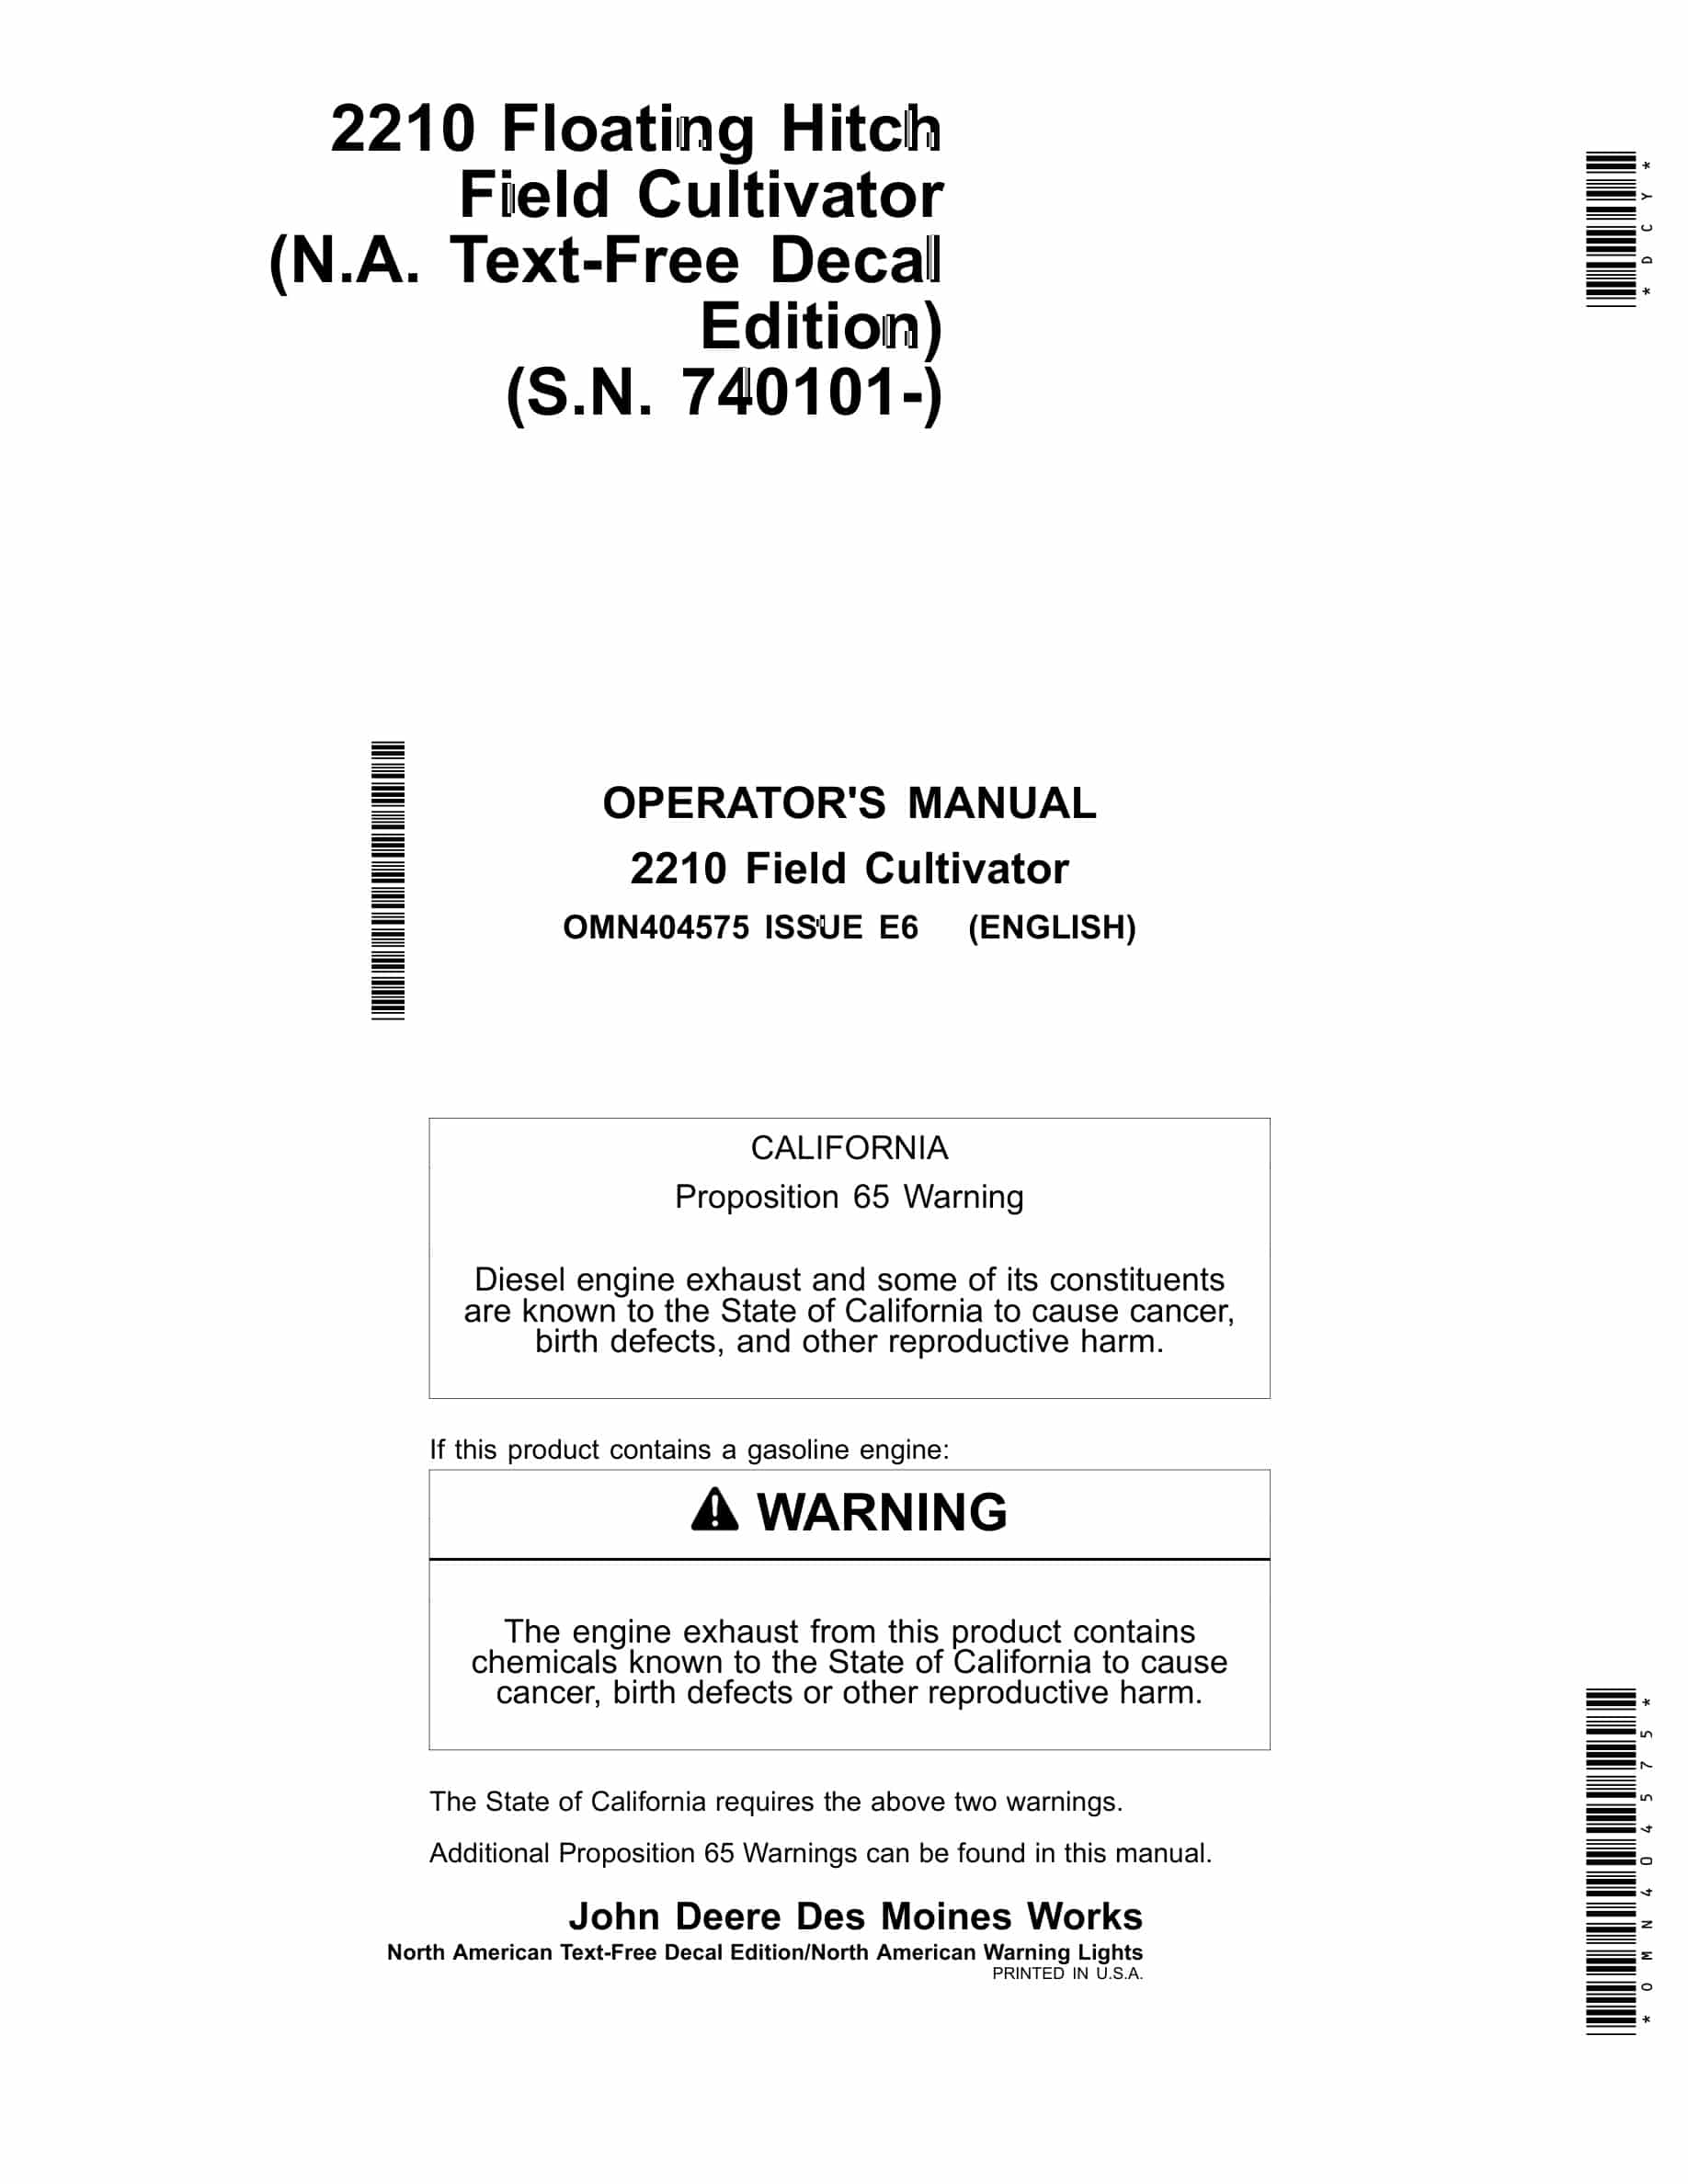 John Deere 2210 Floating Hitch Field Cultivator Operator Manual OMN404575-1